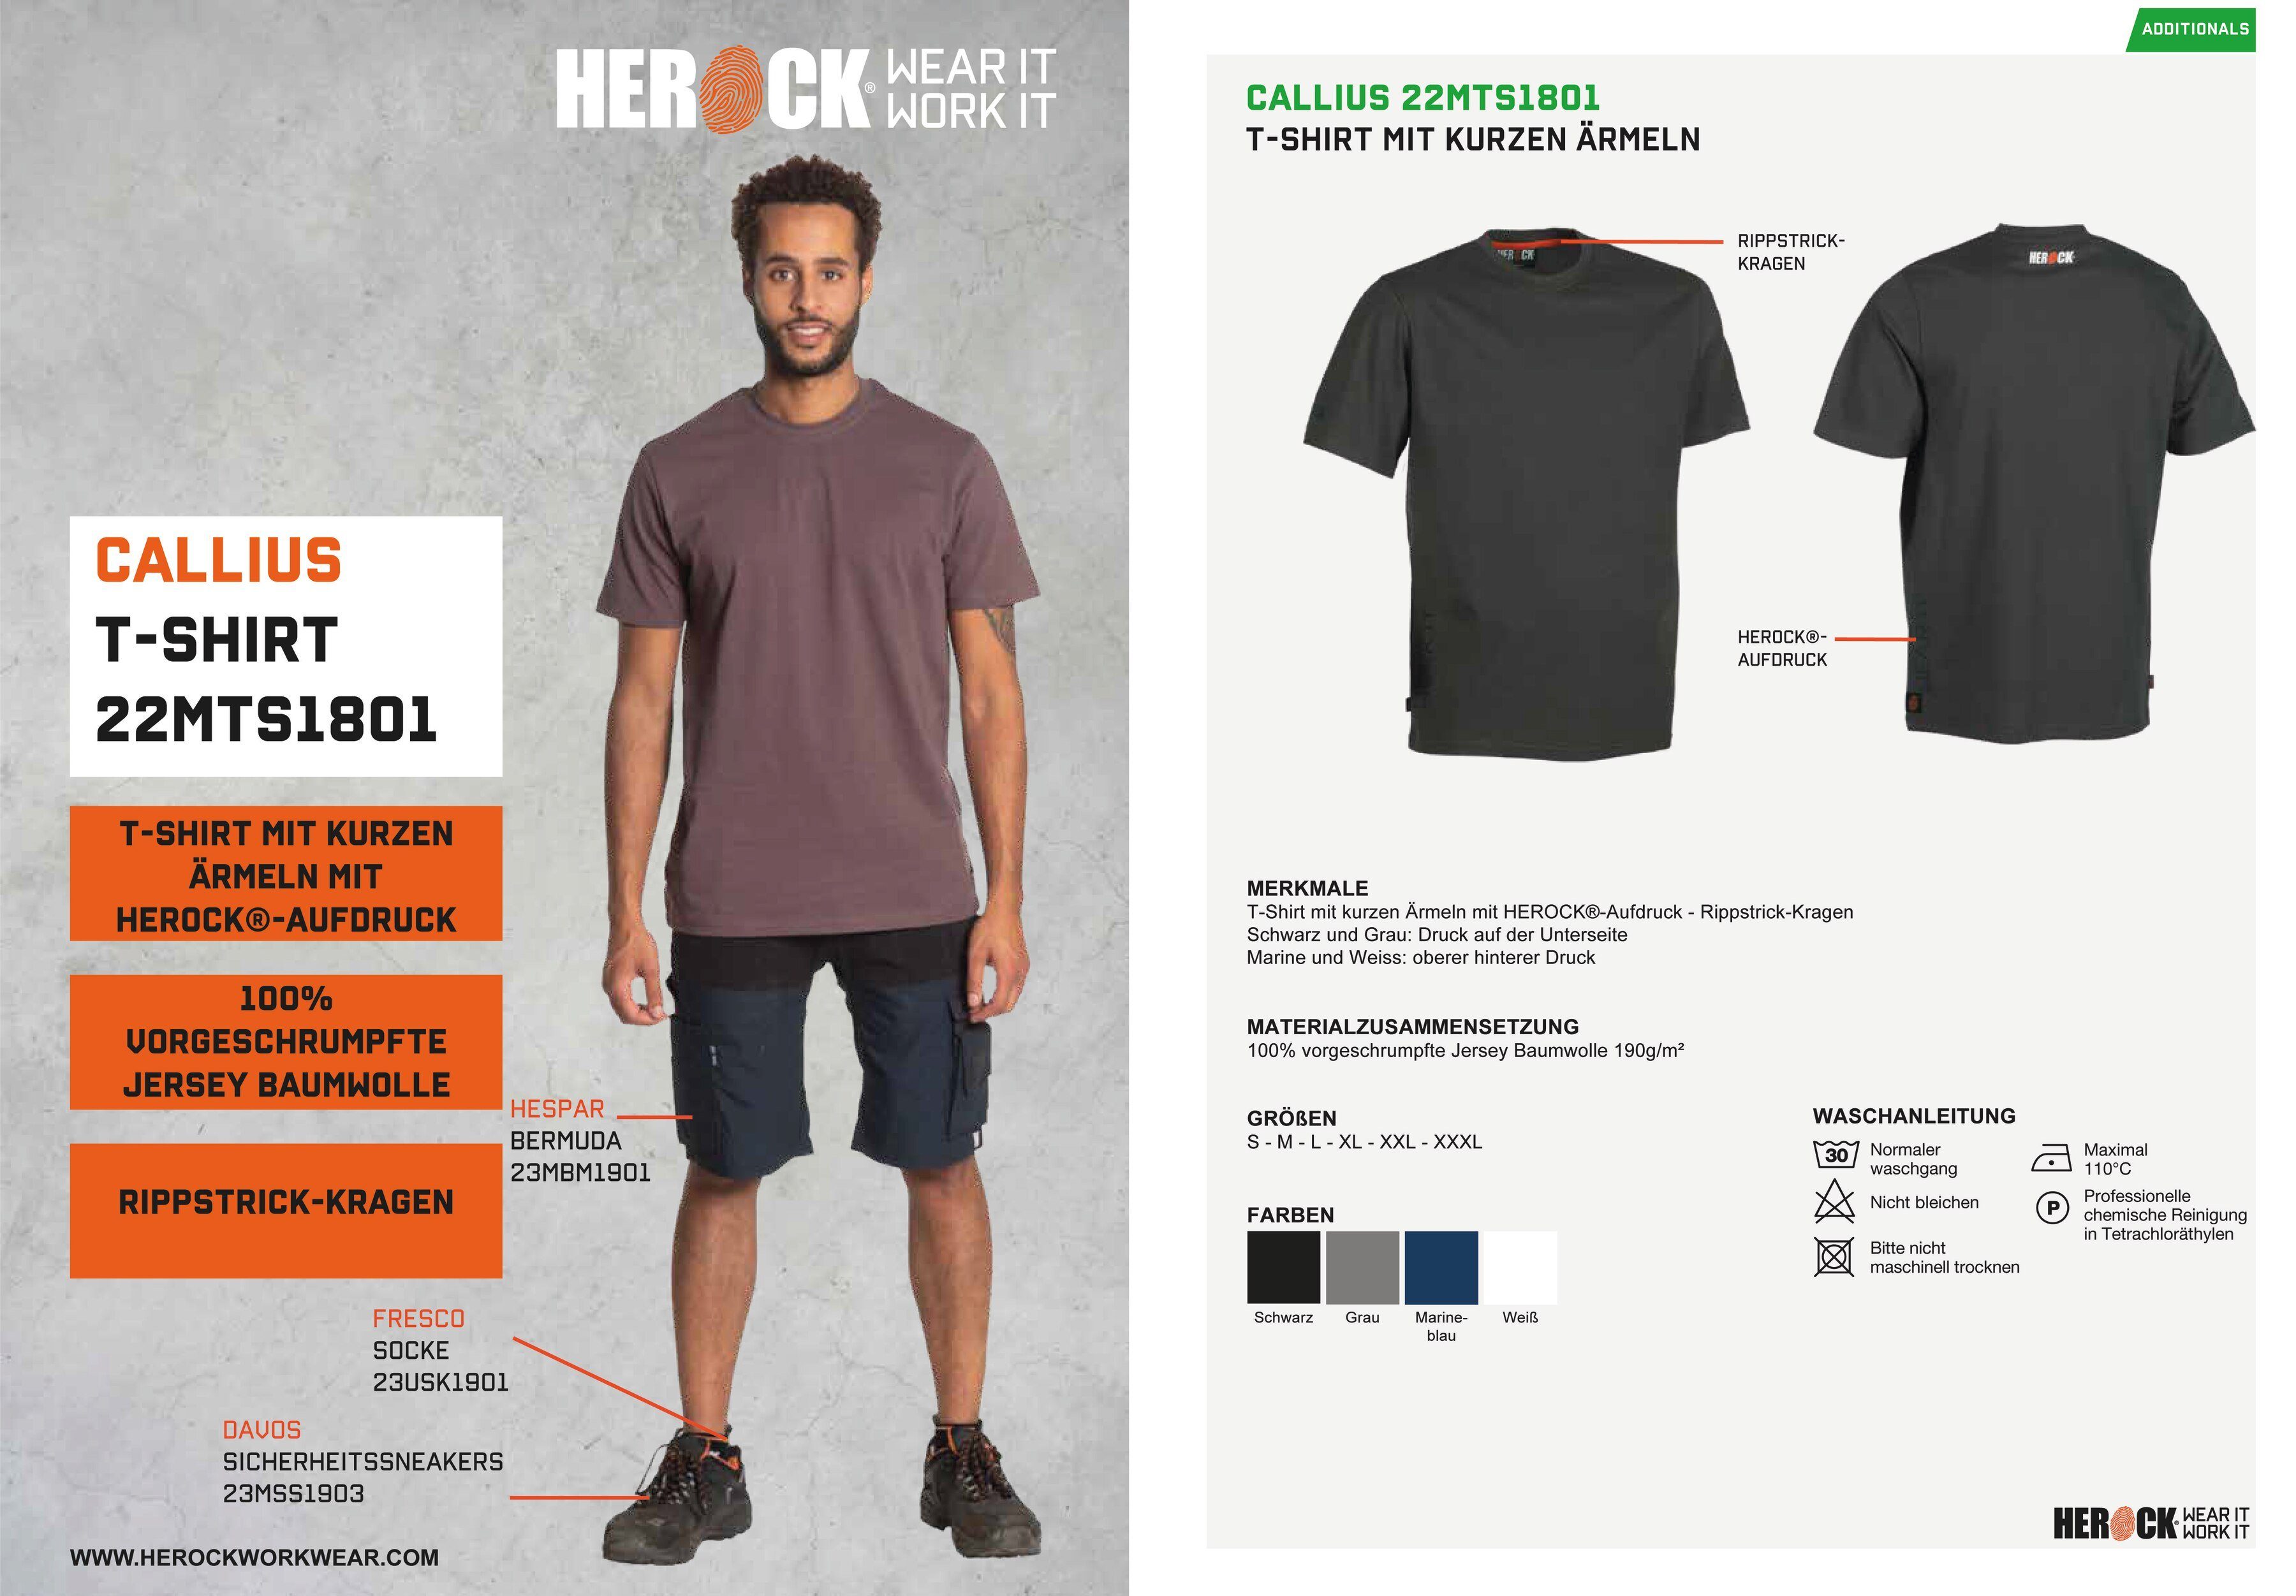 Herock T-Shirt Callius T-Shirt Rippstrickkragen Rundhalsausschnitt, Ärmel, kurze Herock®-Aufdruck, Ärmel kurze grau